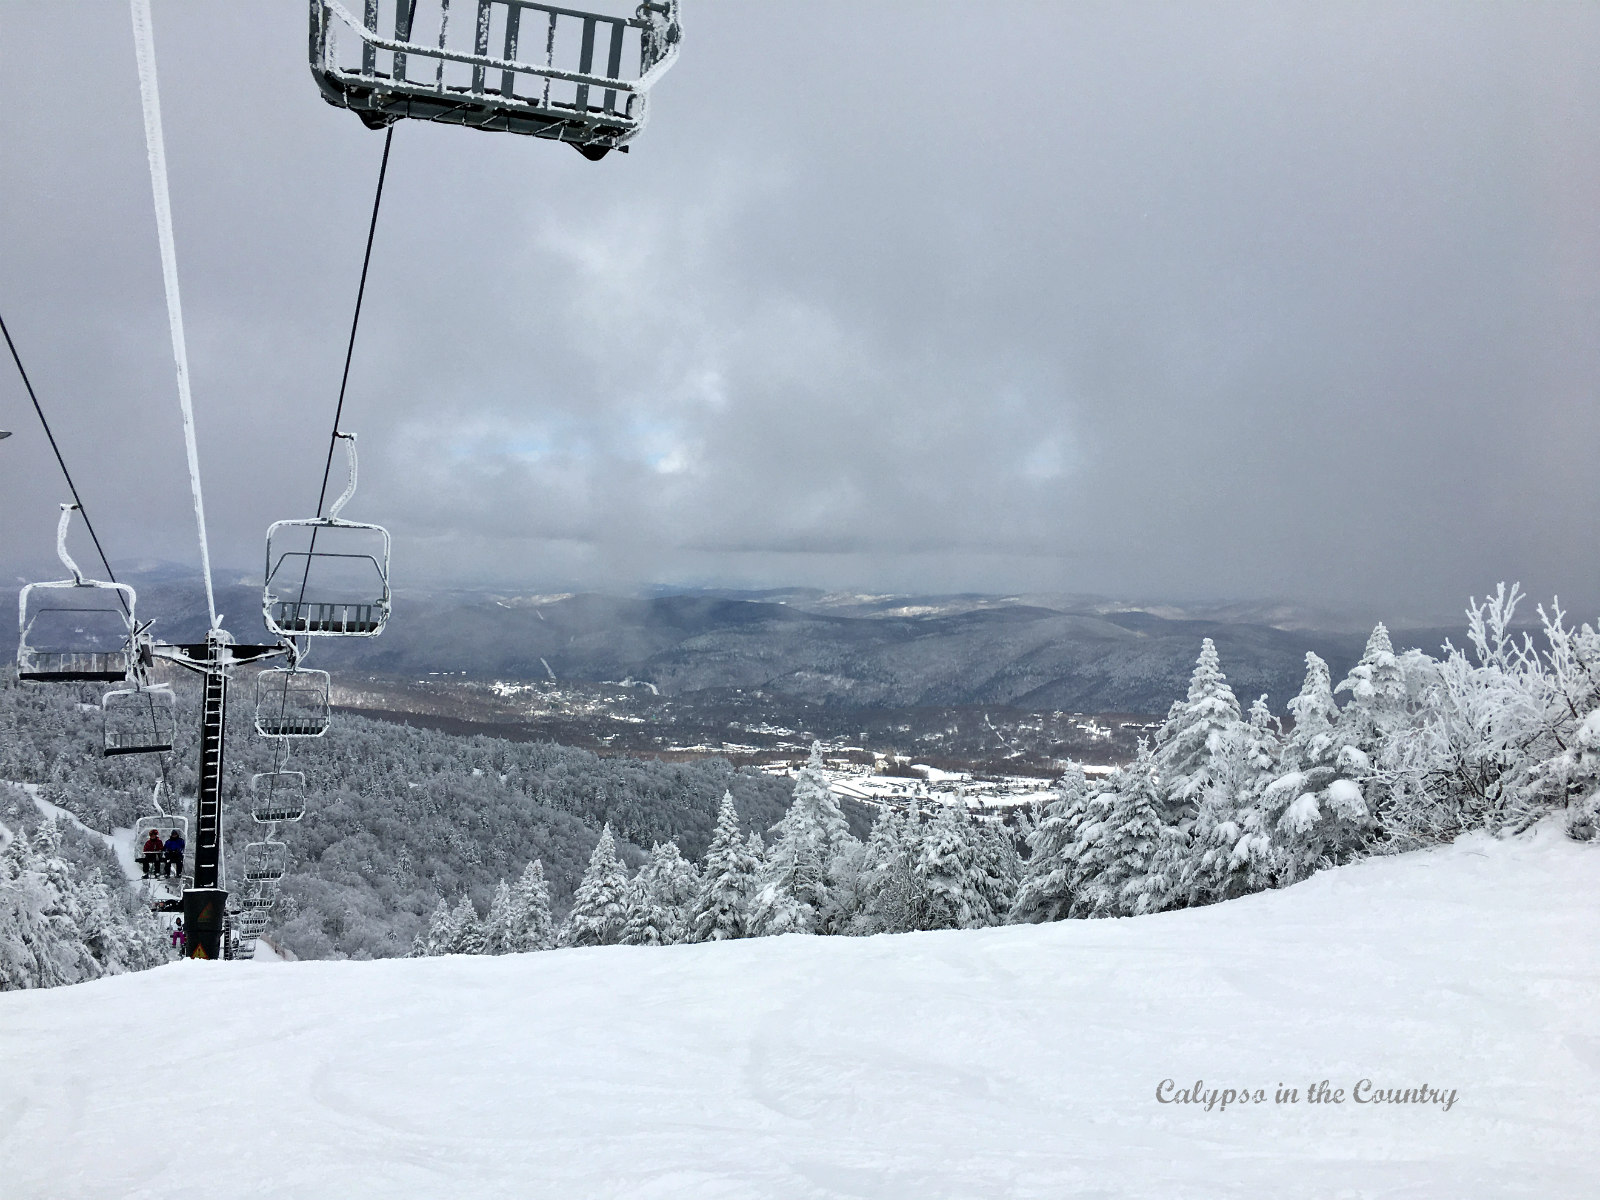 Ski lift and snowy mountain